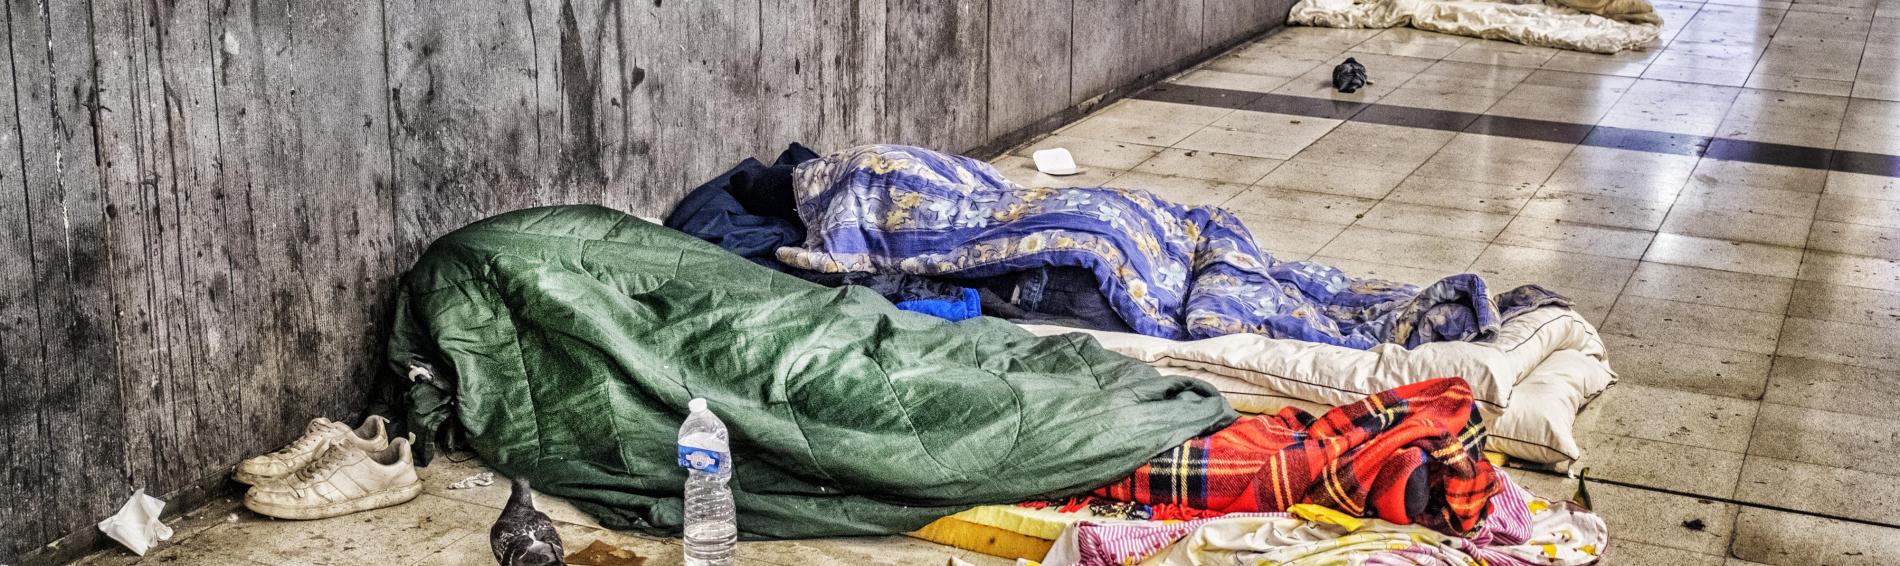 Personnes sans-abri dormant dans une station de métro